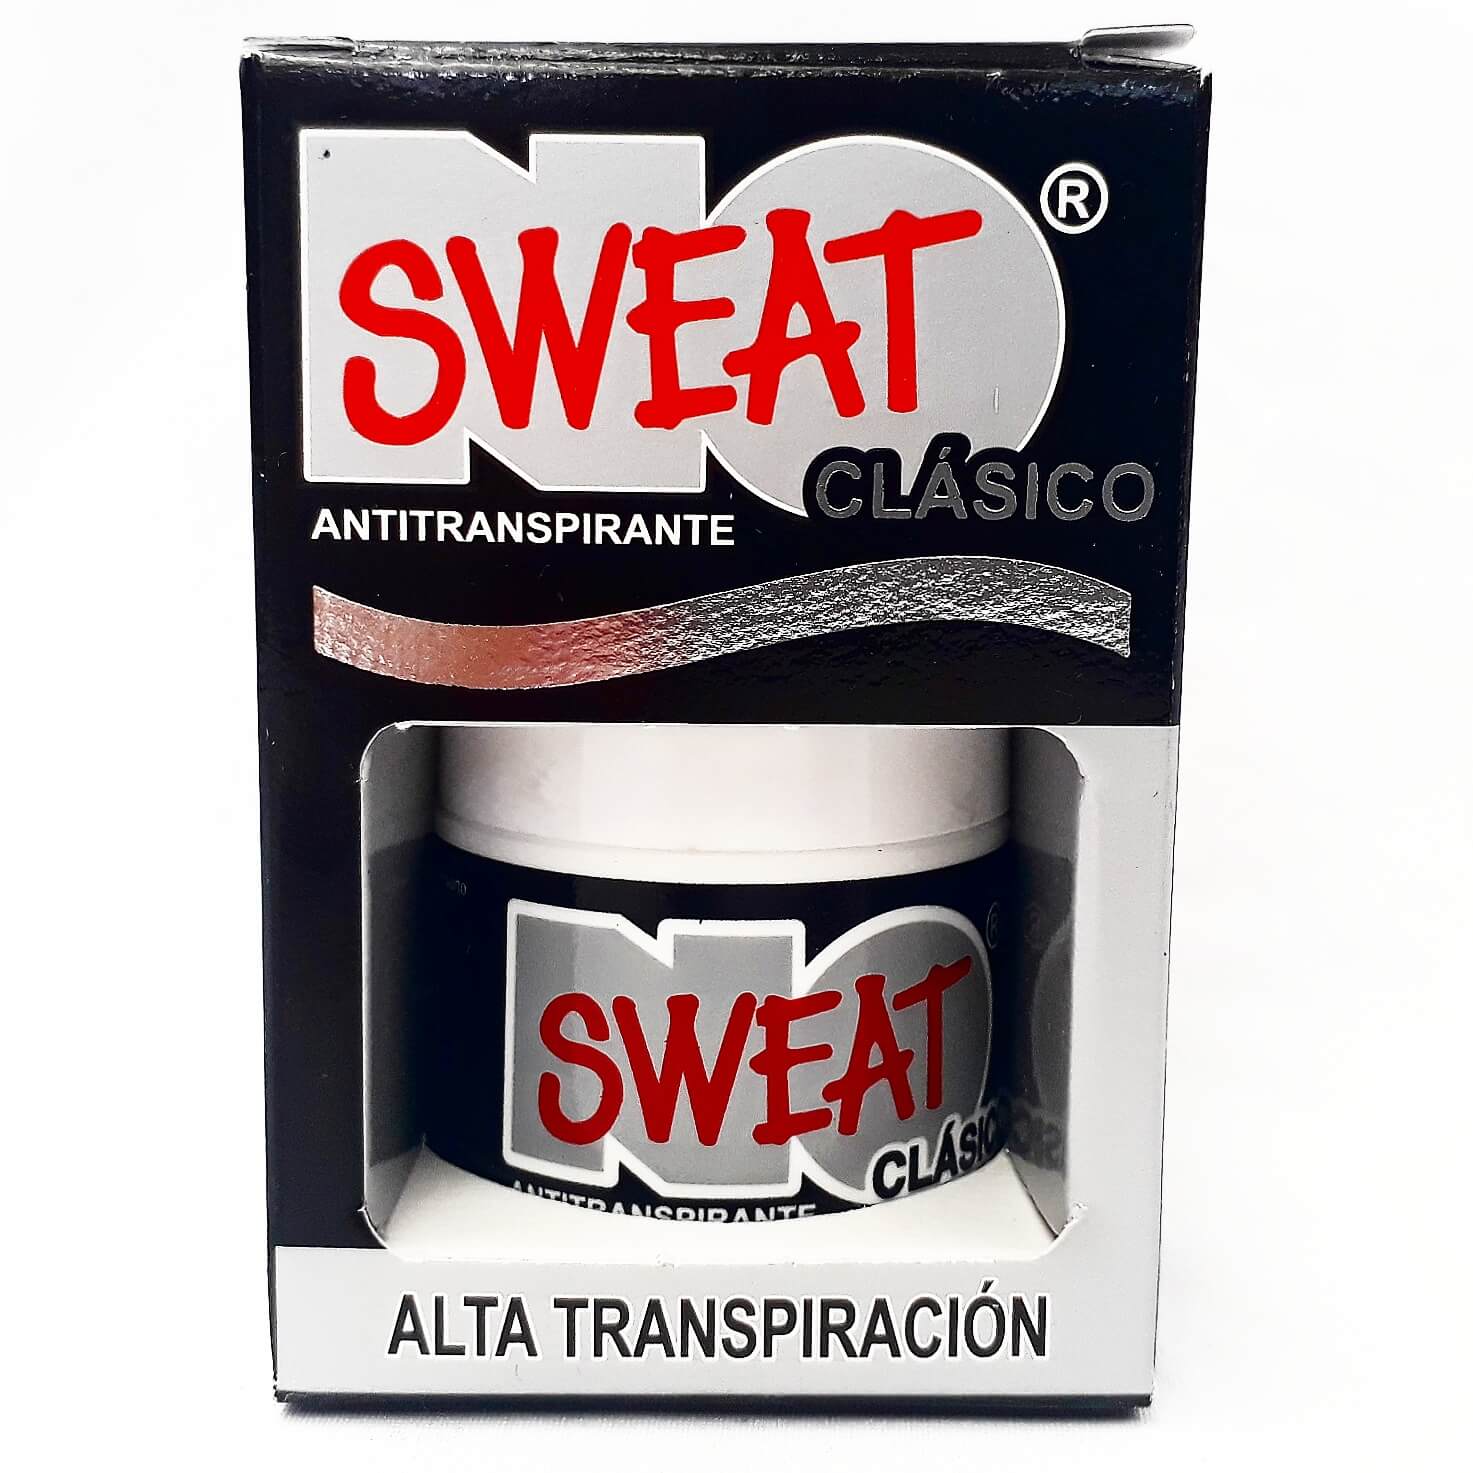 No sweat Antitraspirante clasico 30 ml Uso Noche